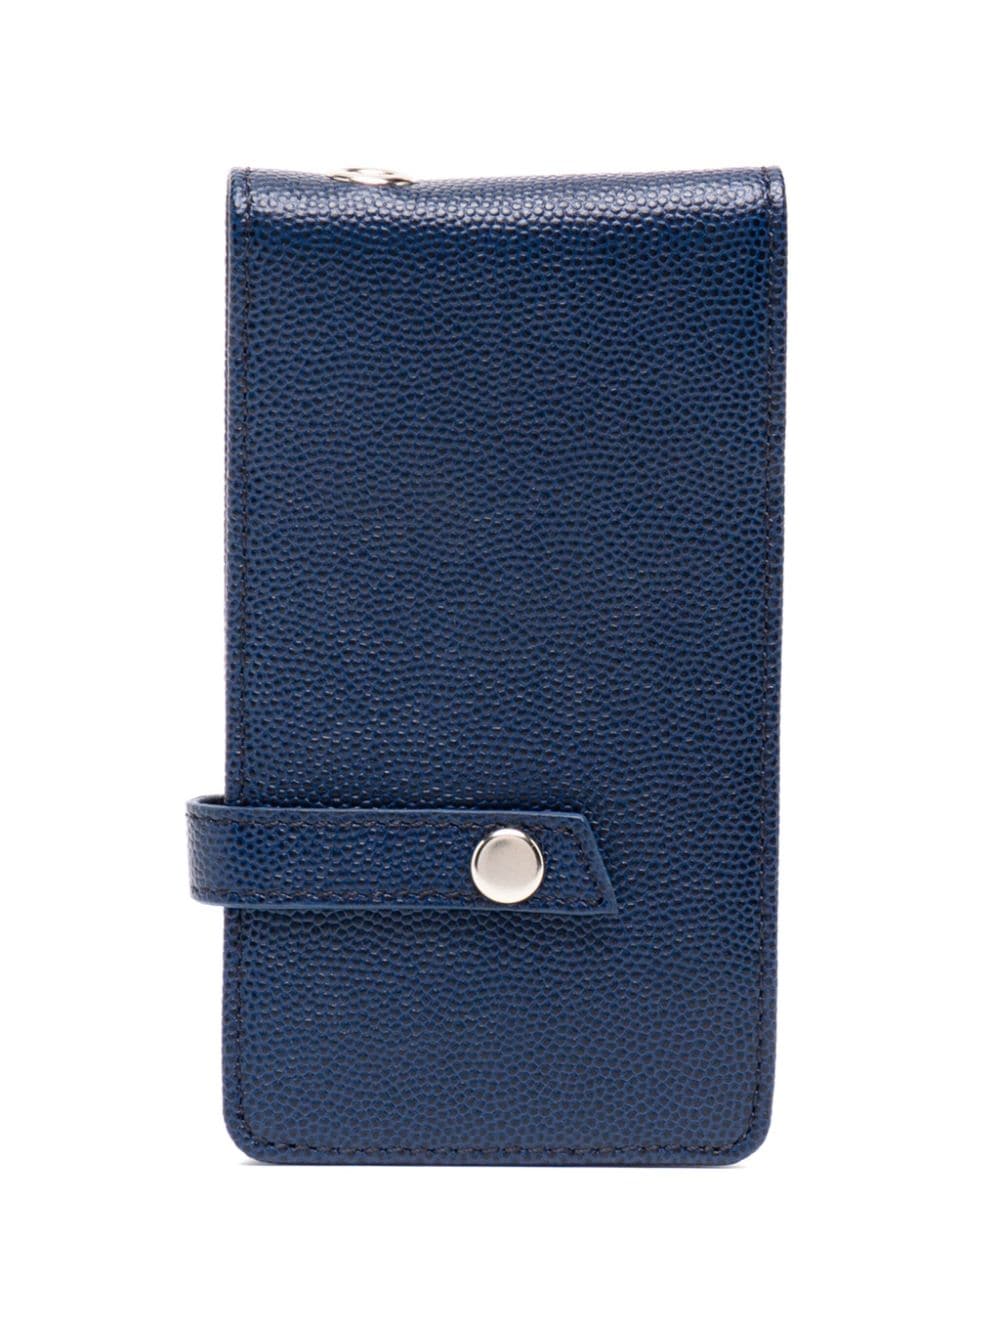 Want Les Essentiels De La Vie Bi-fold Leather Wallet In Blau